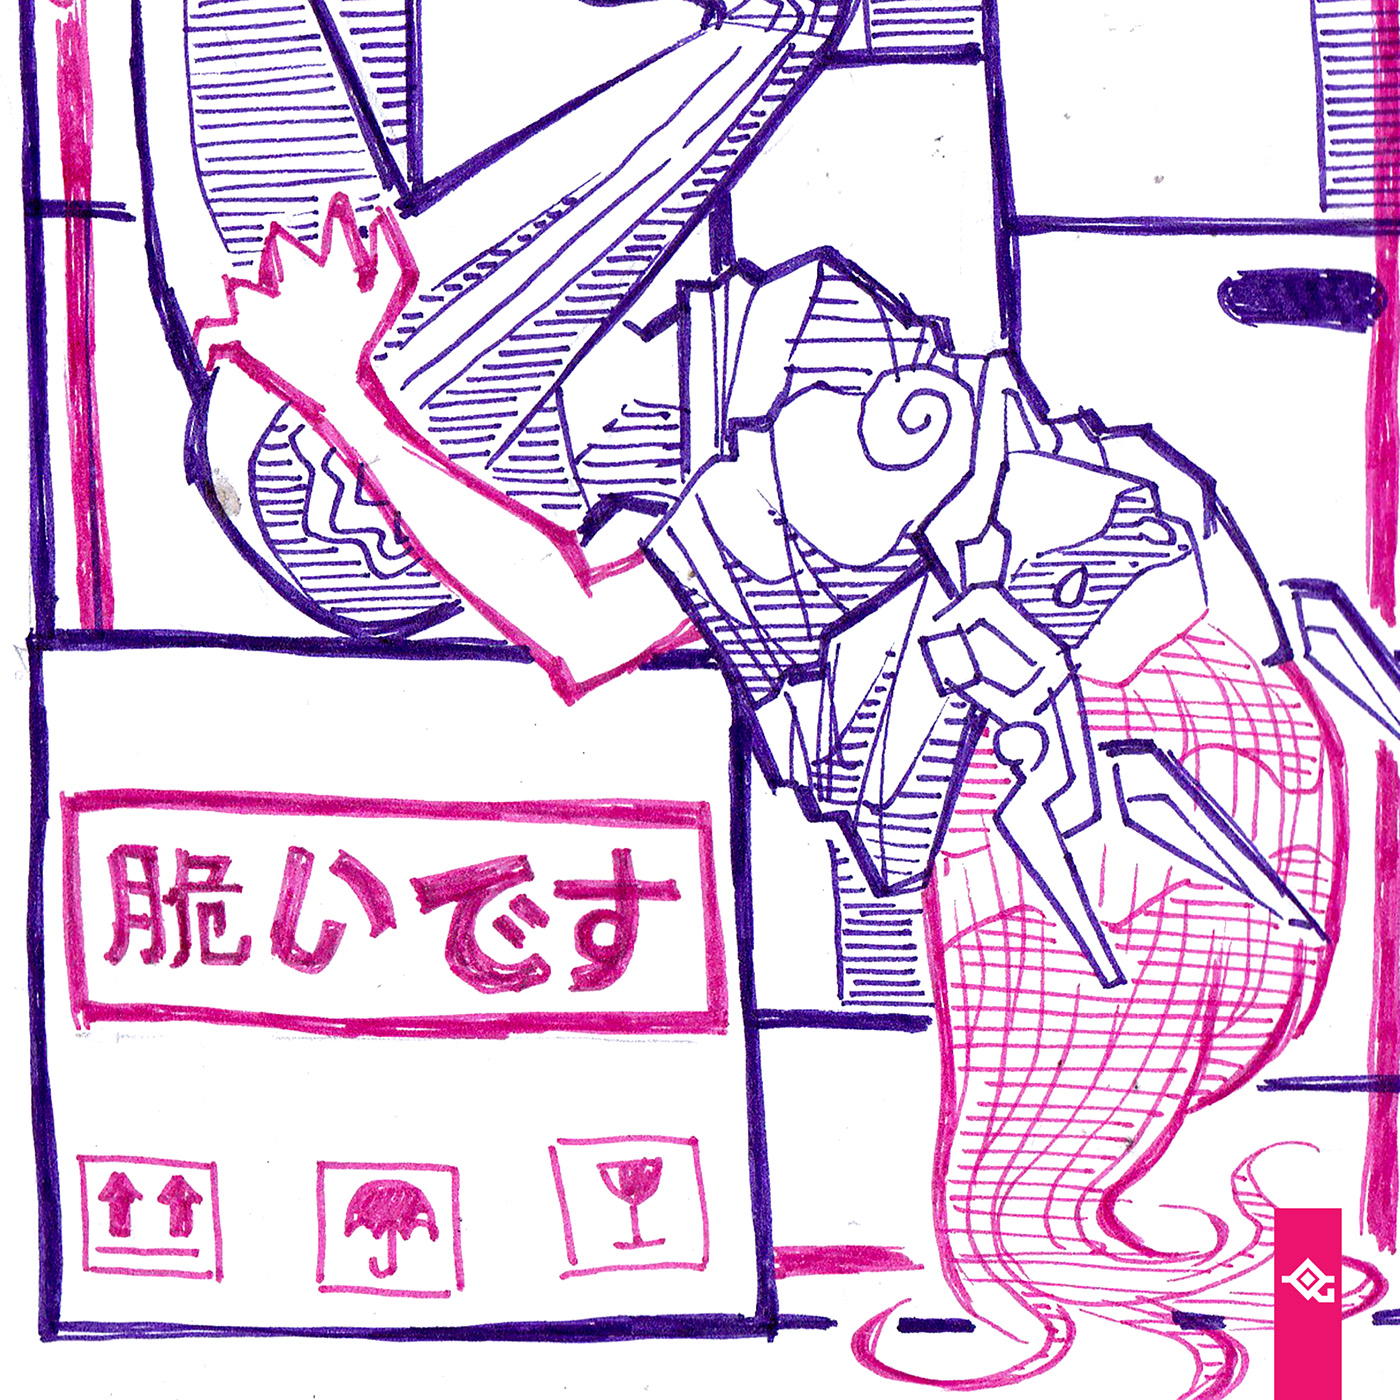 inktober jakeparker sketch challenge manga japan kawaii cute daily sketchy